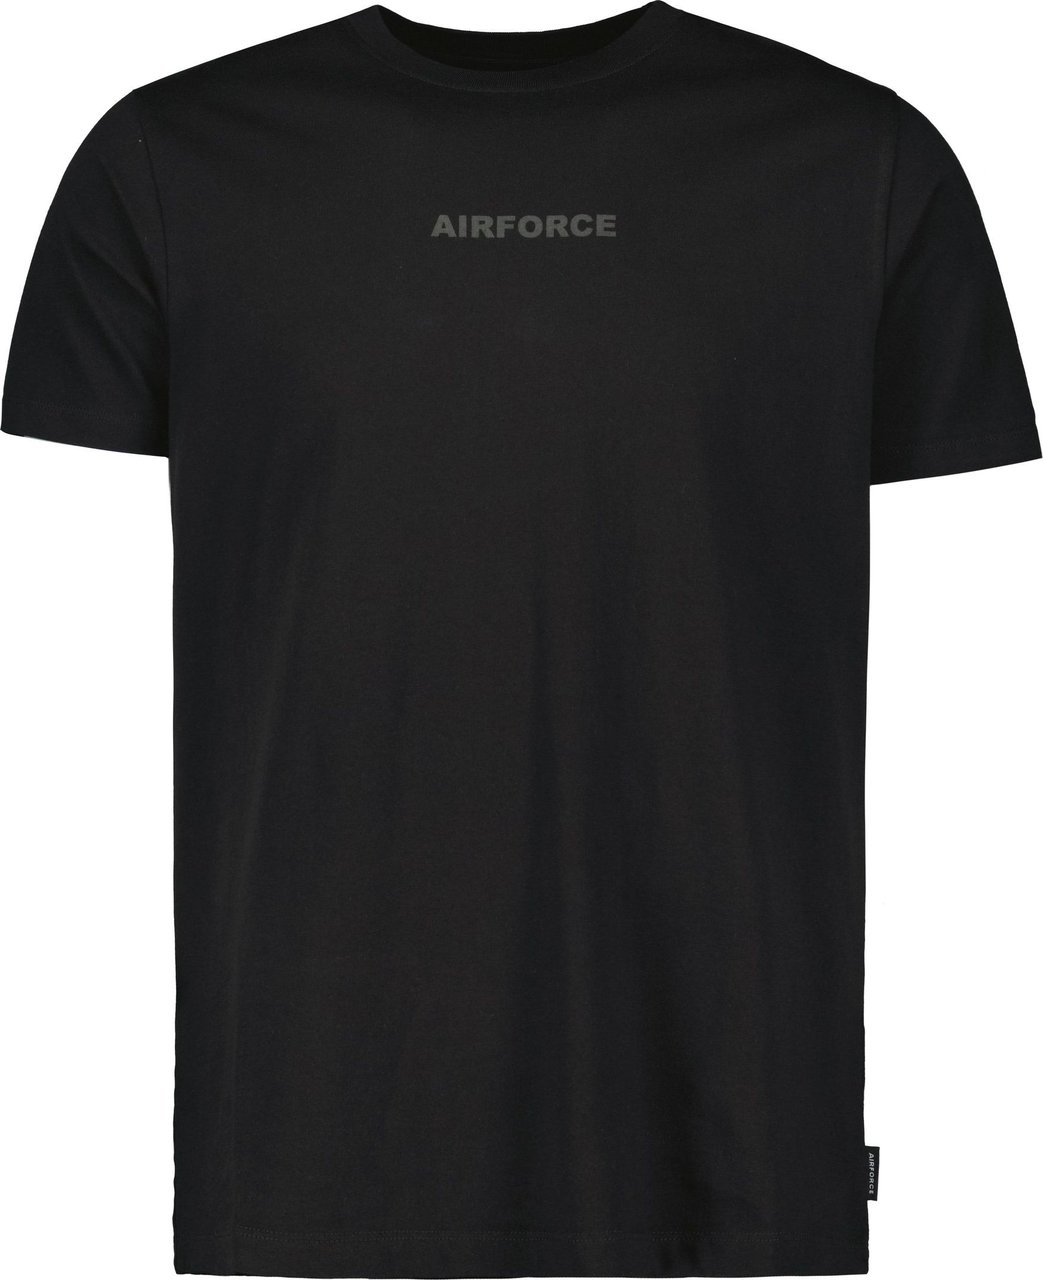 Airforce Airforce Wording/logo T-shirt Zwart